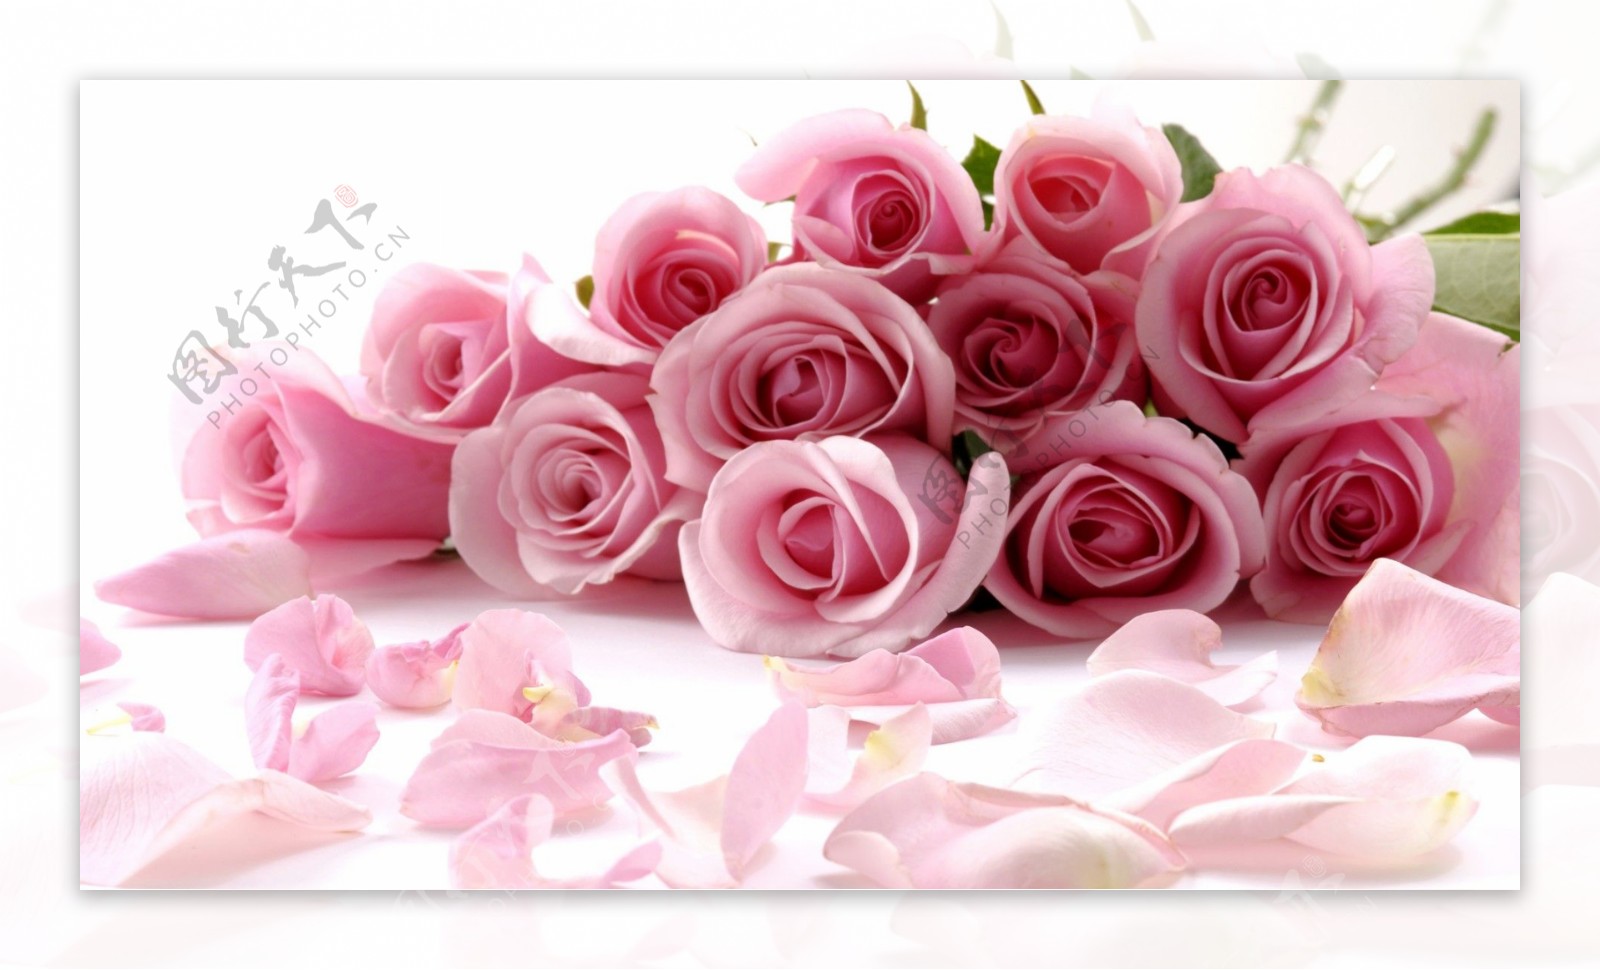 粉红色玫瑰花底纹素材